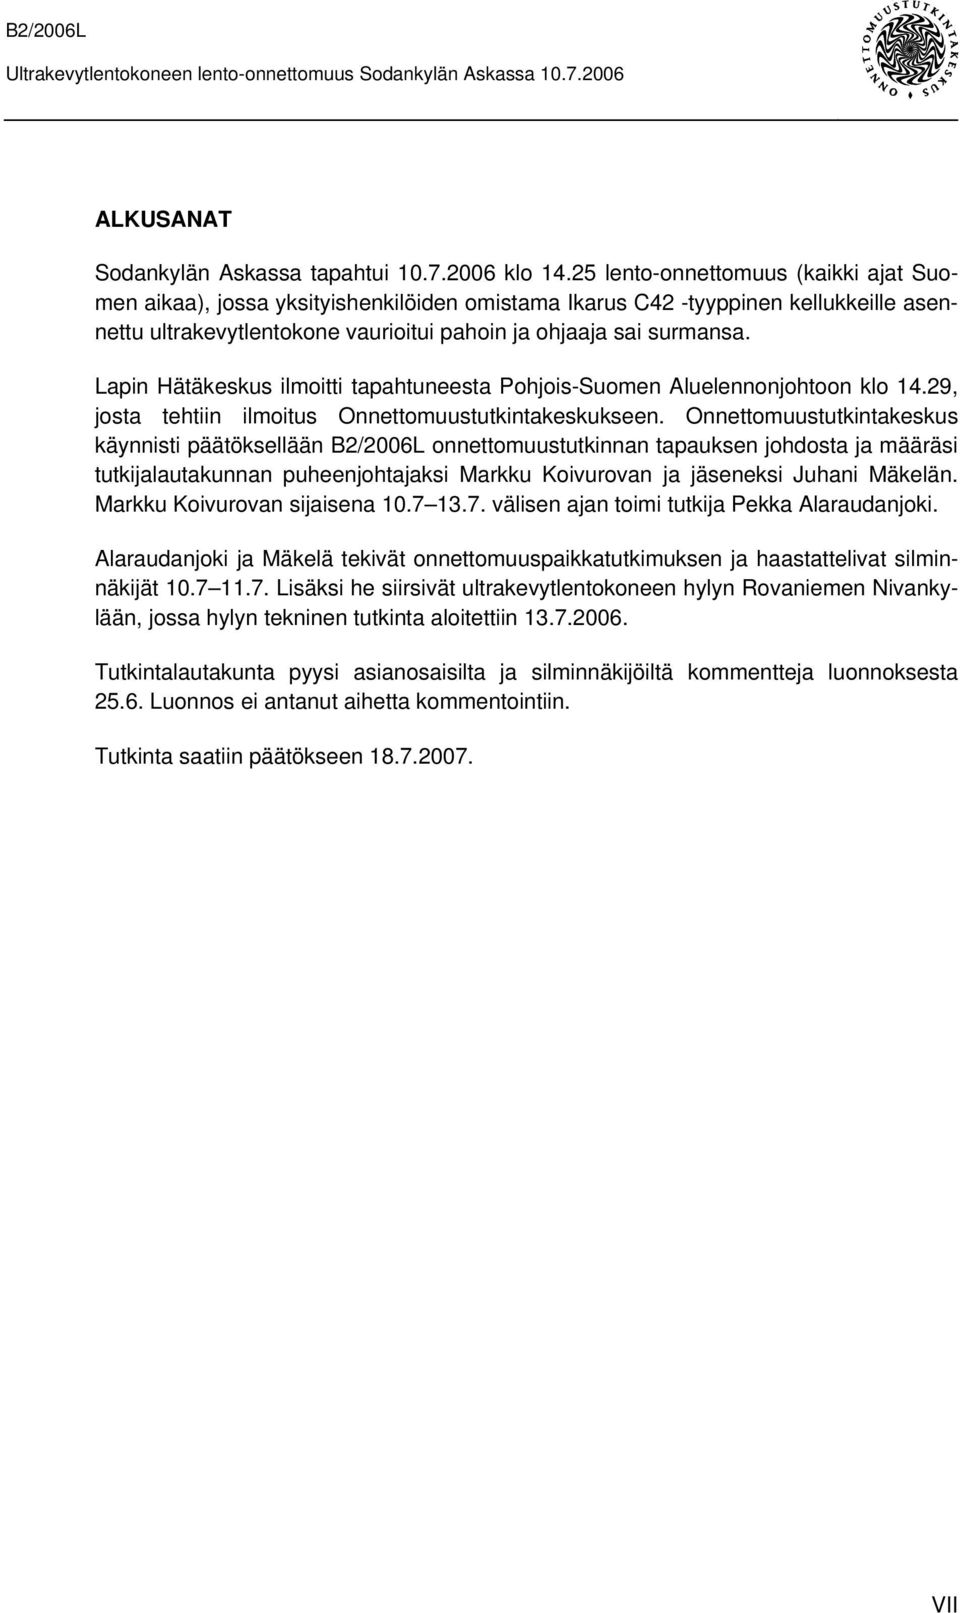 Lapin Hätäkeskus ilmoitti tapahtuneesta Pohjois-Suomen Aluelennonjohtoon klo 14.29, josta tehtiin ilmoitus Onnettomuustutkintakeskukseen.